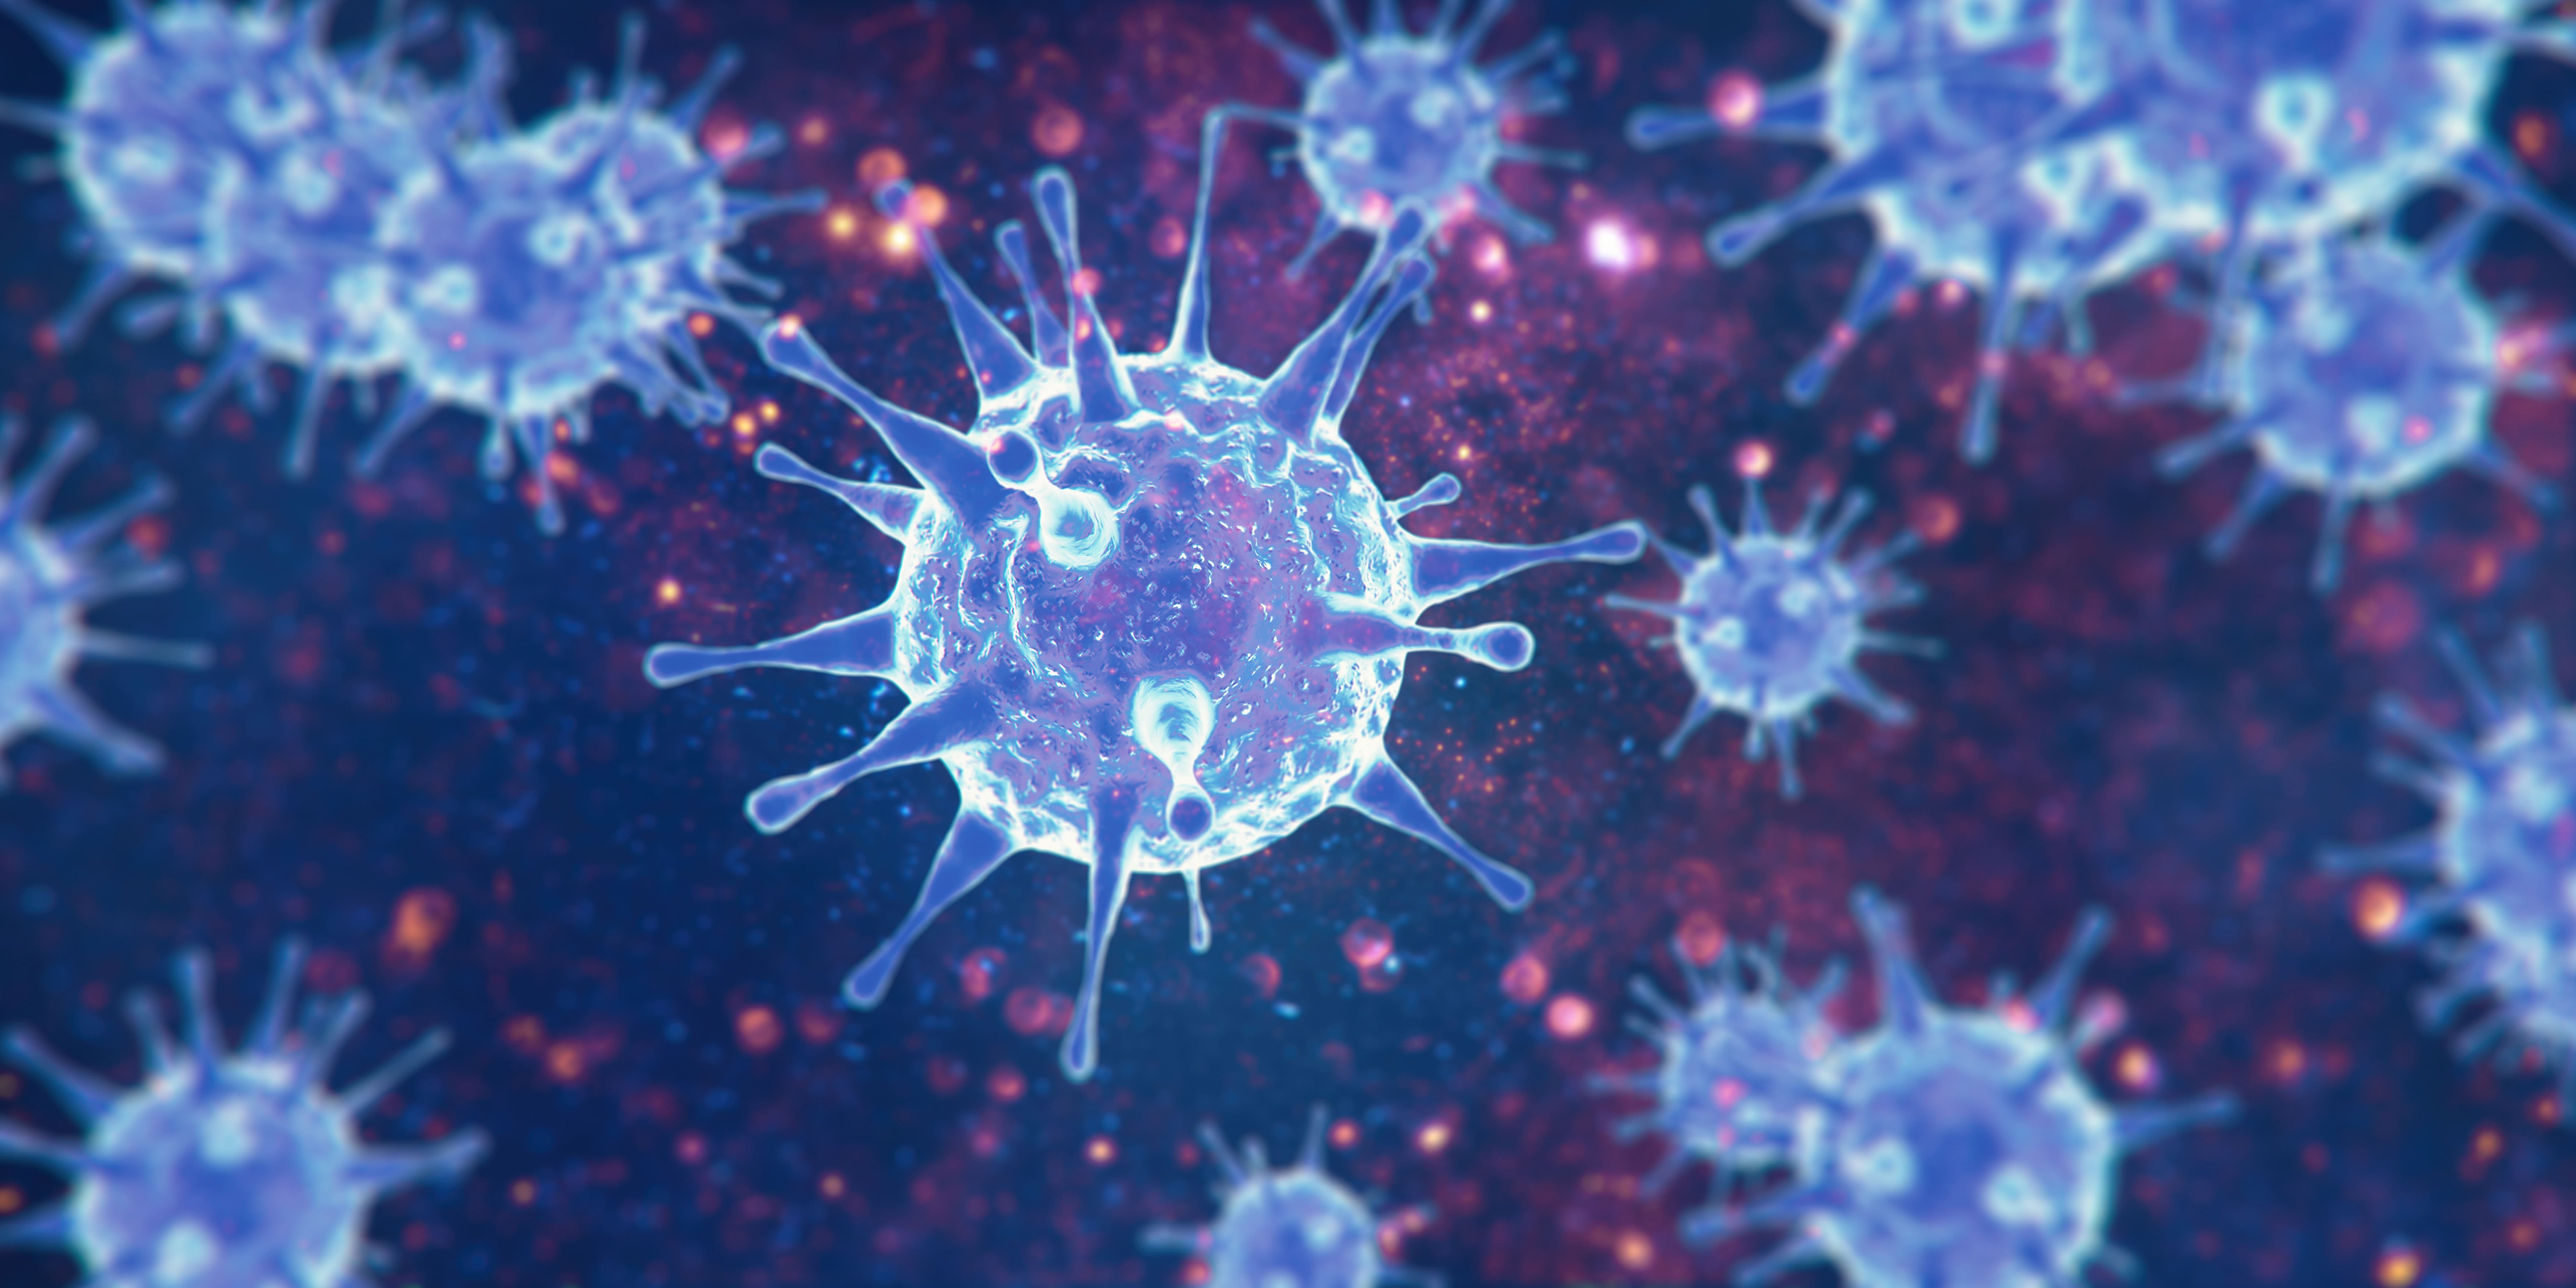 Les coronavirus regroupent de nombreux virus dont seuls certains sont pathogènes pour l'Homme, parfois mortels. ©&nbsp;Thaut Images, Adobe Stock